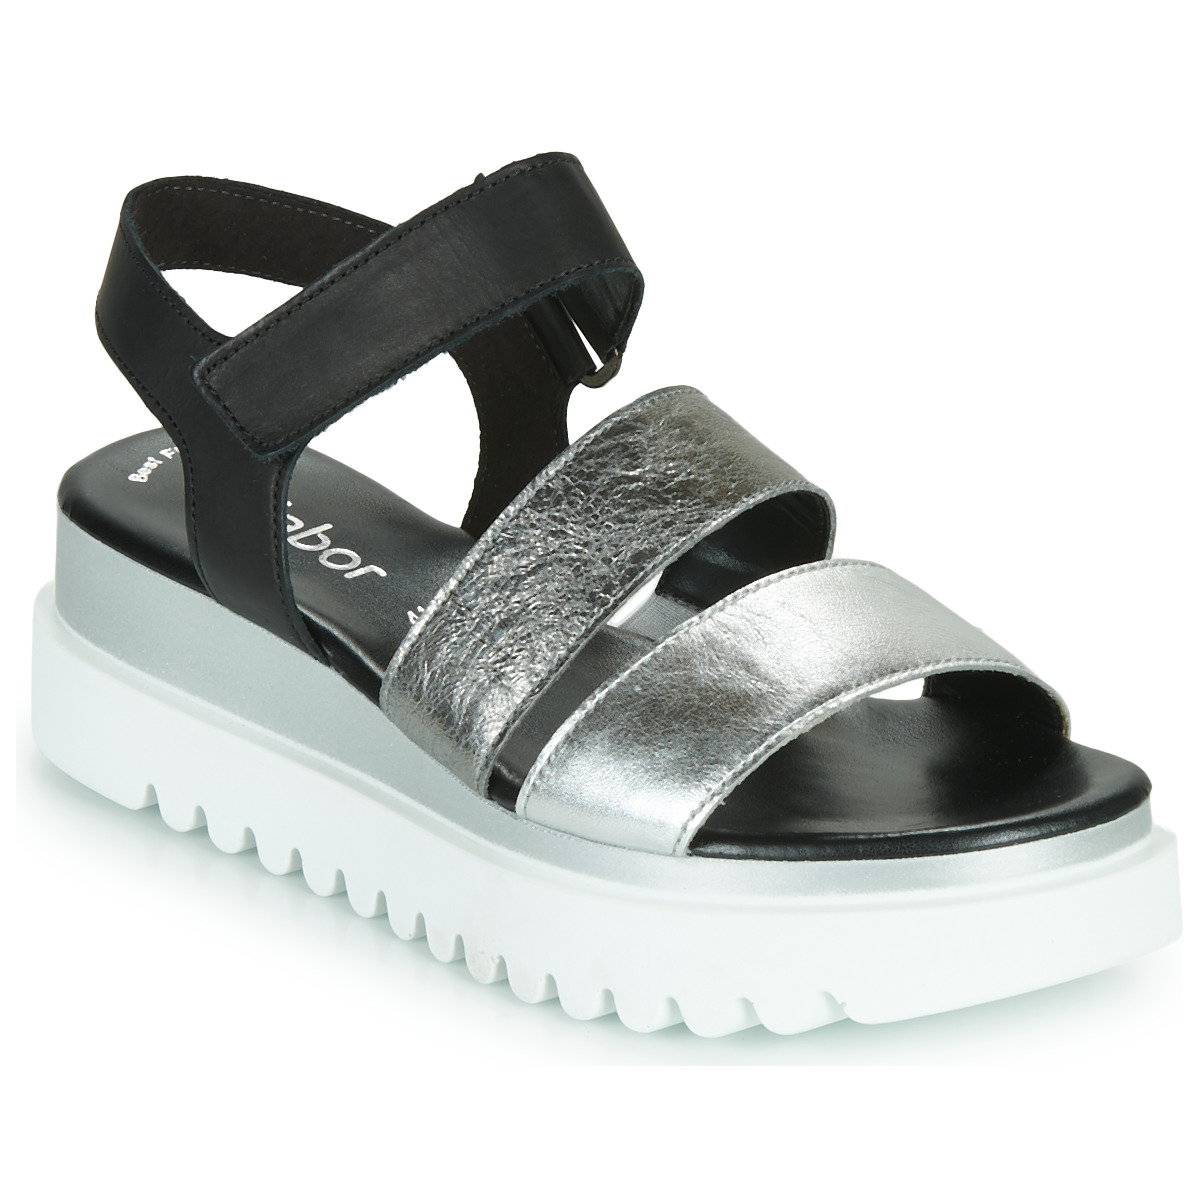 Chaussures Femme Sandales et Nu-pieds Gabor 6461061 Noir / Blanc / Argenté